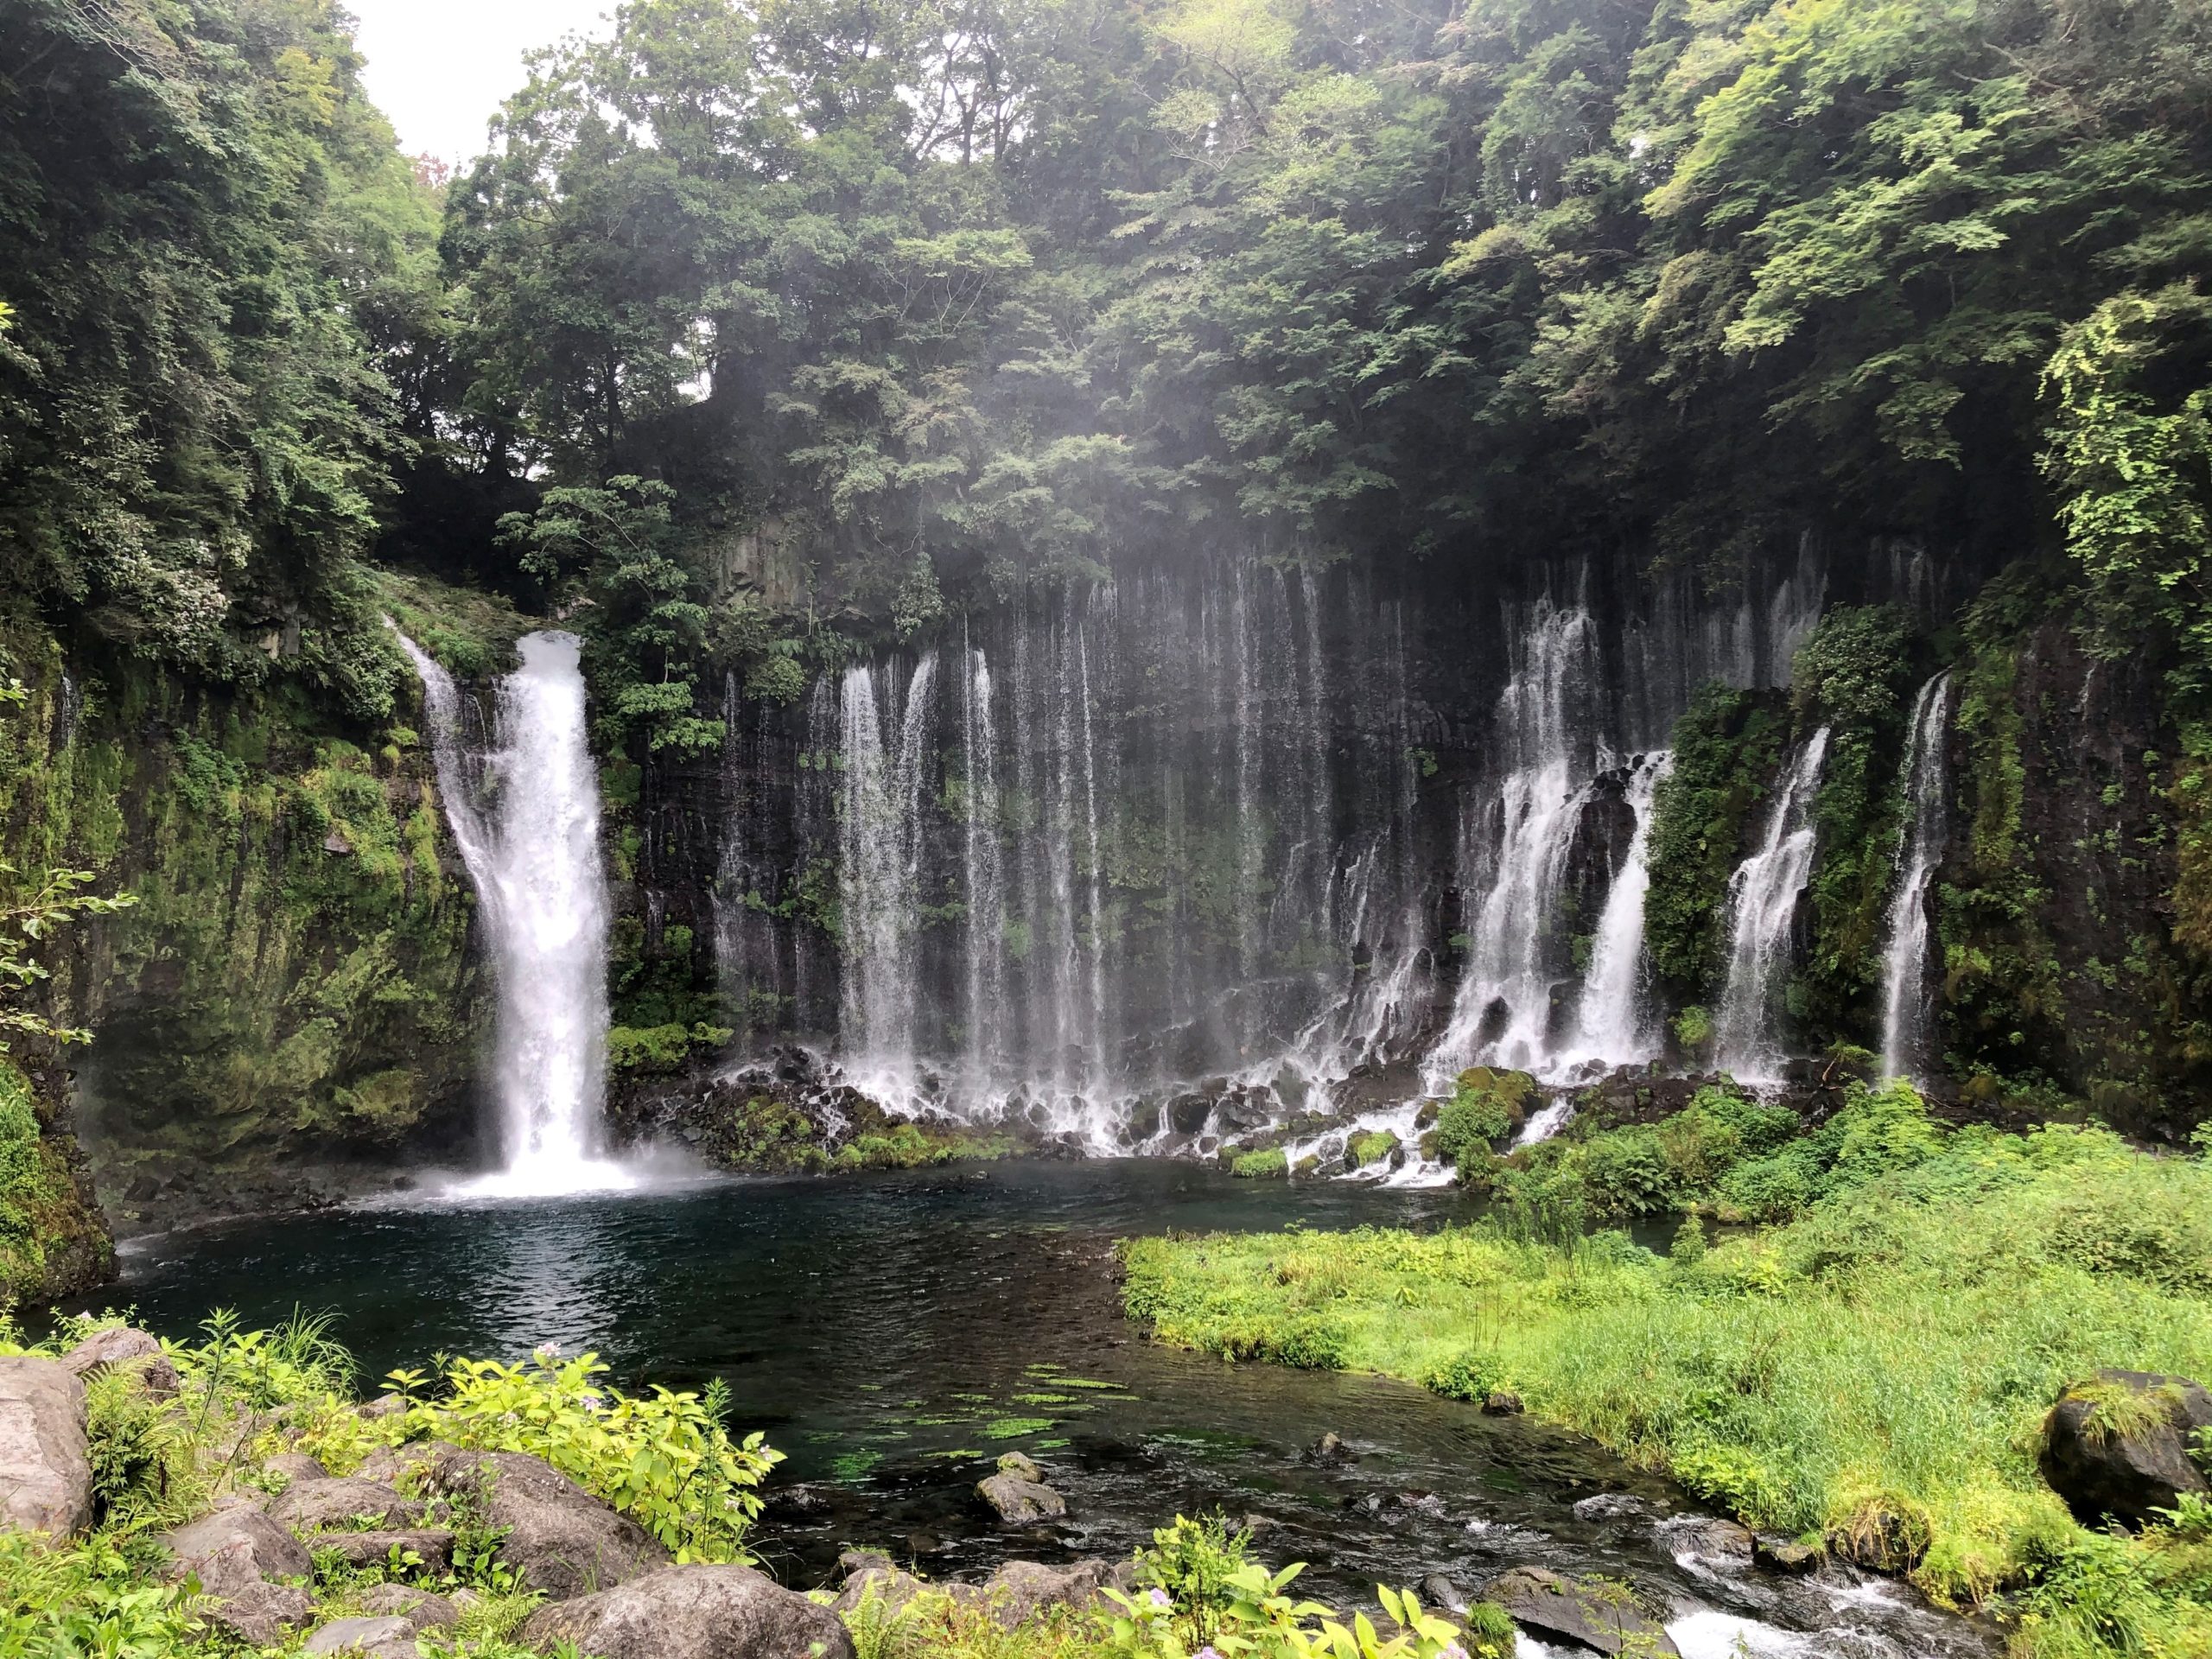 Waterfalls, nature around Mount Fuji